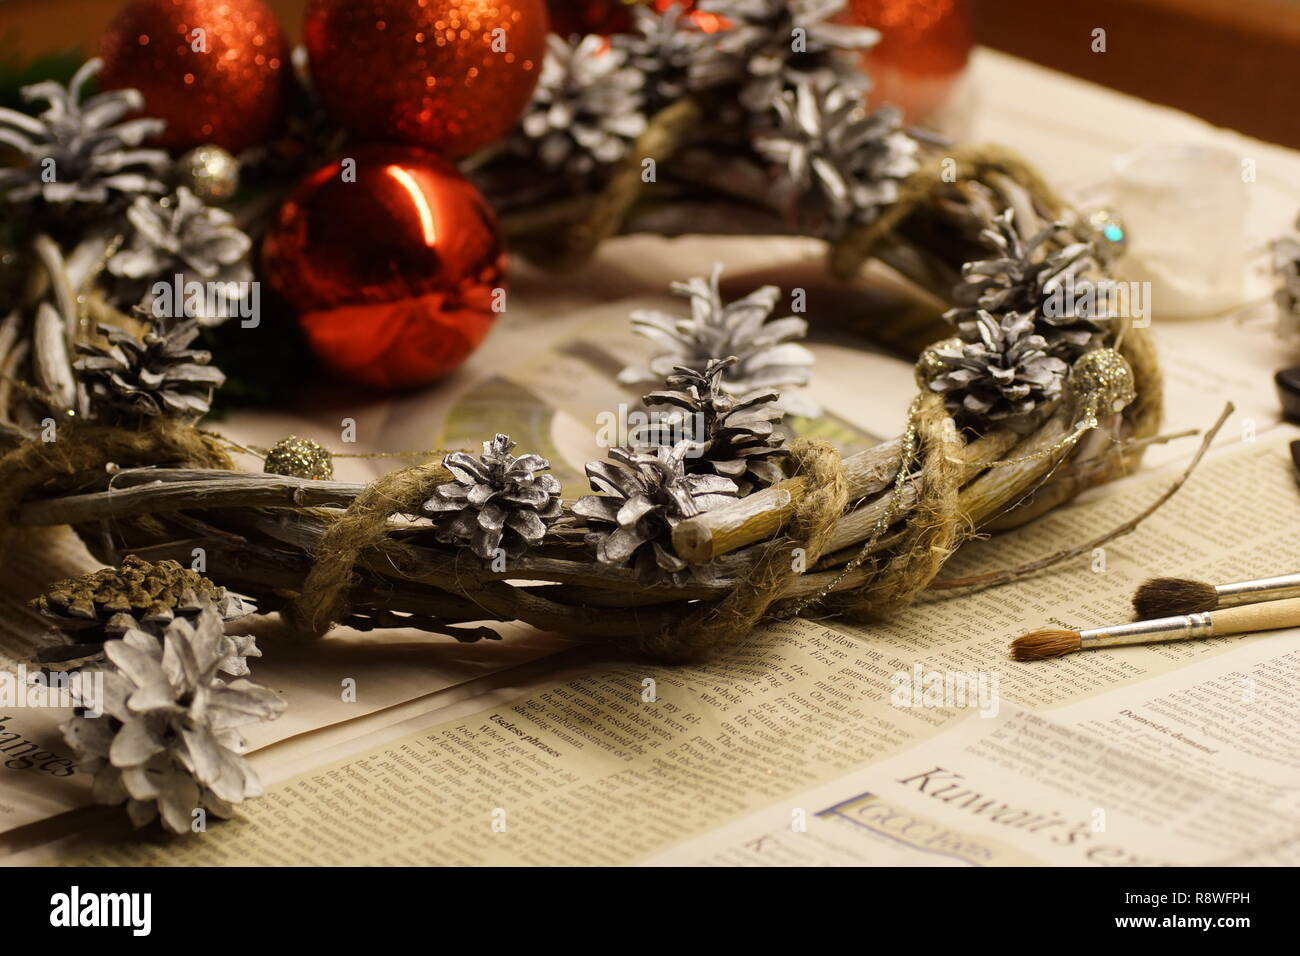 El proceso de hacer una guirnalda de Navidad con sus propias manos. Guirnalda o corona de adviento, es una tradición cristiana. Moscú, Rusia. 05 dic 2018 Foto de stock